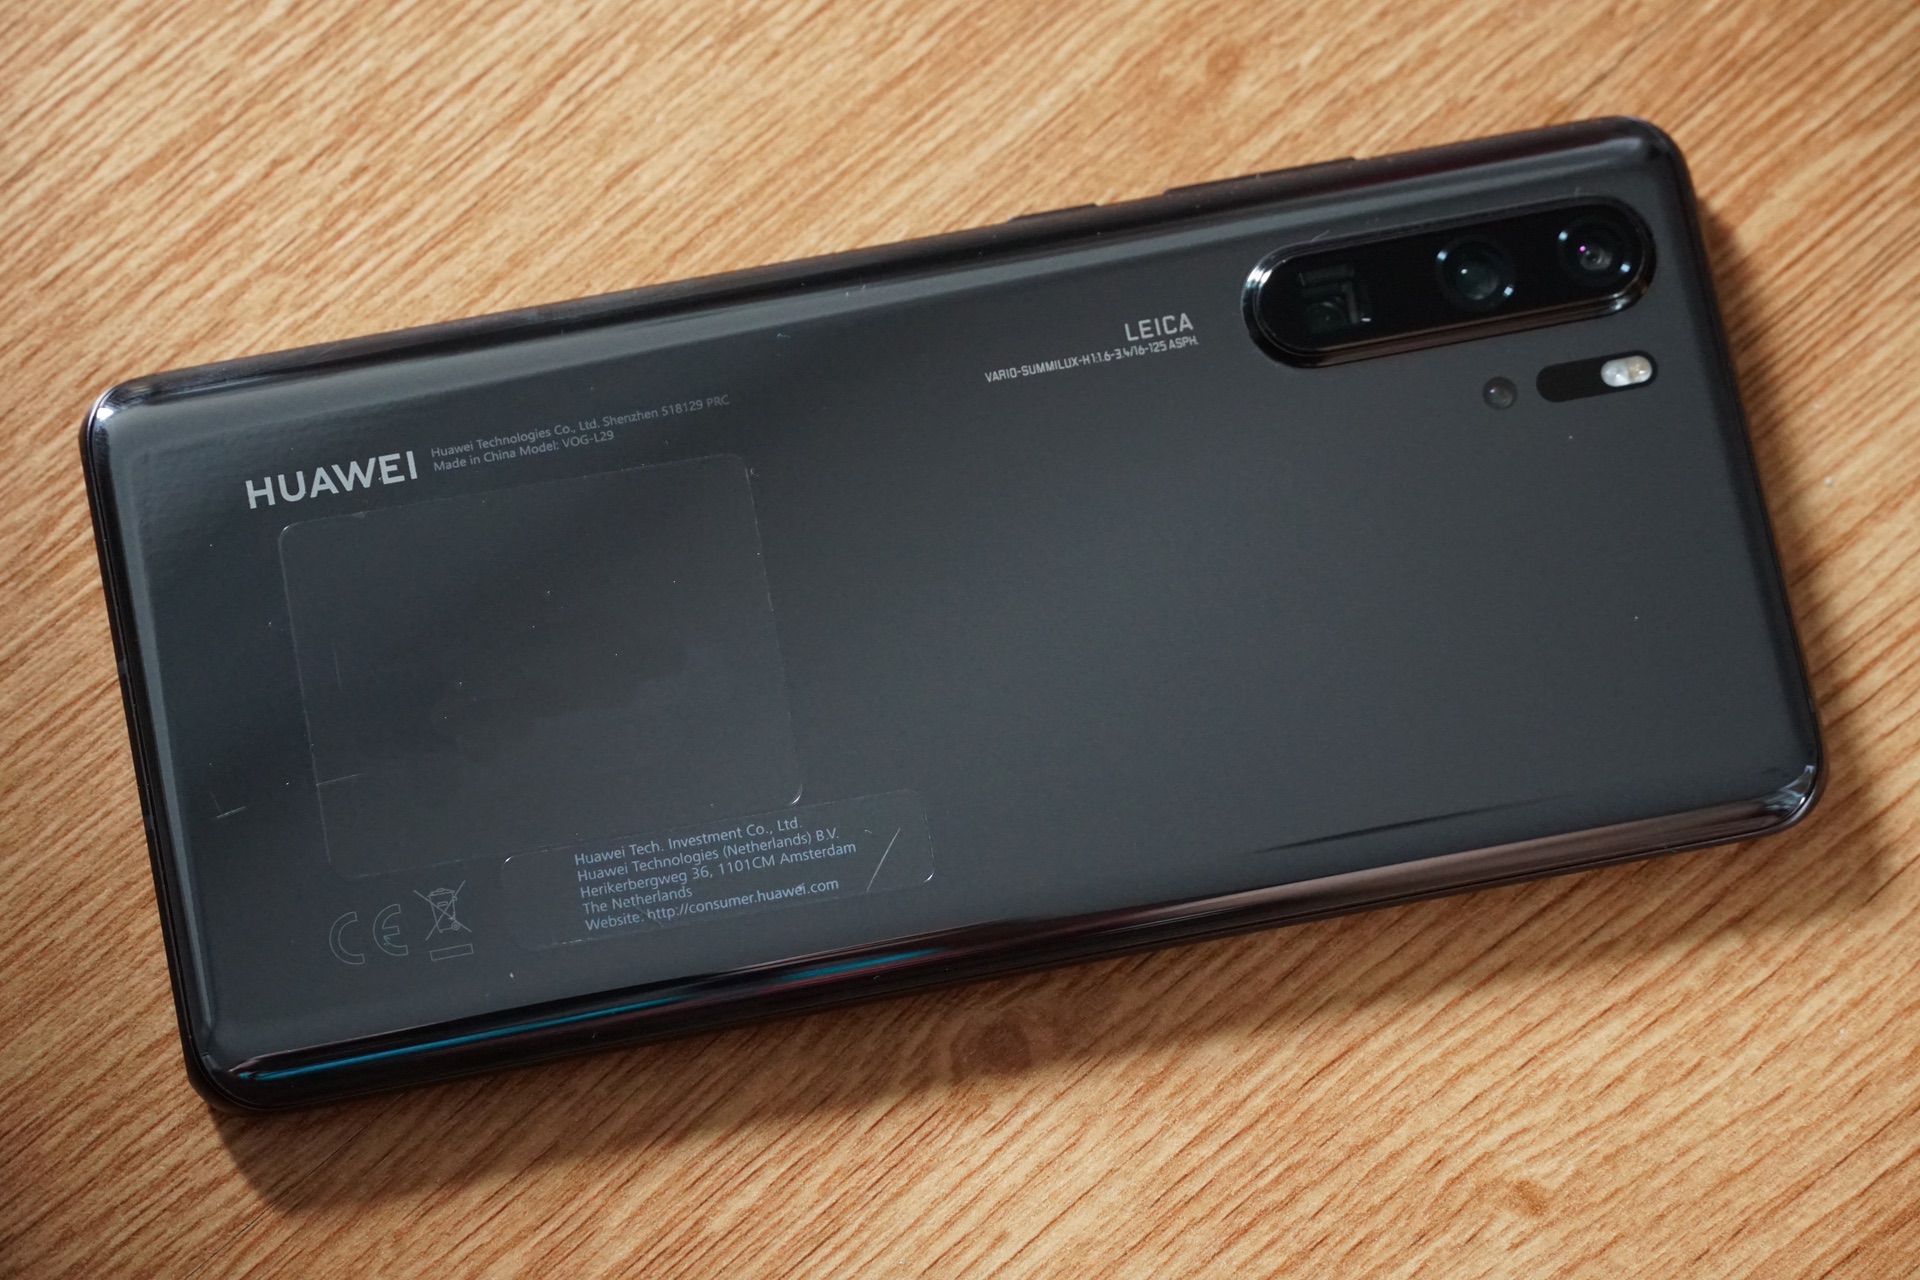 ช่วงป้ายยา ชมภาพจาก Huawei P30 Pro กล้องมือถือที่ดีที่สุดในประวัติศาสตร์!